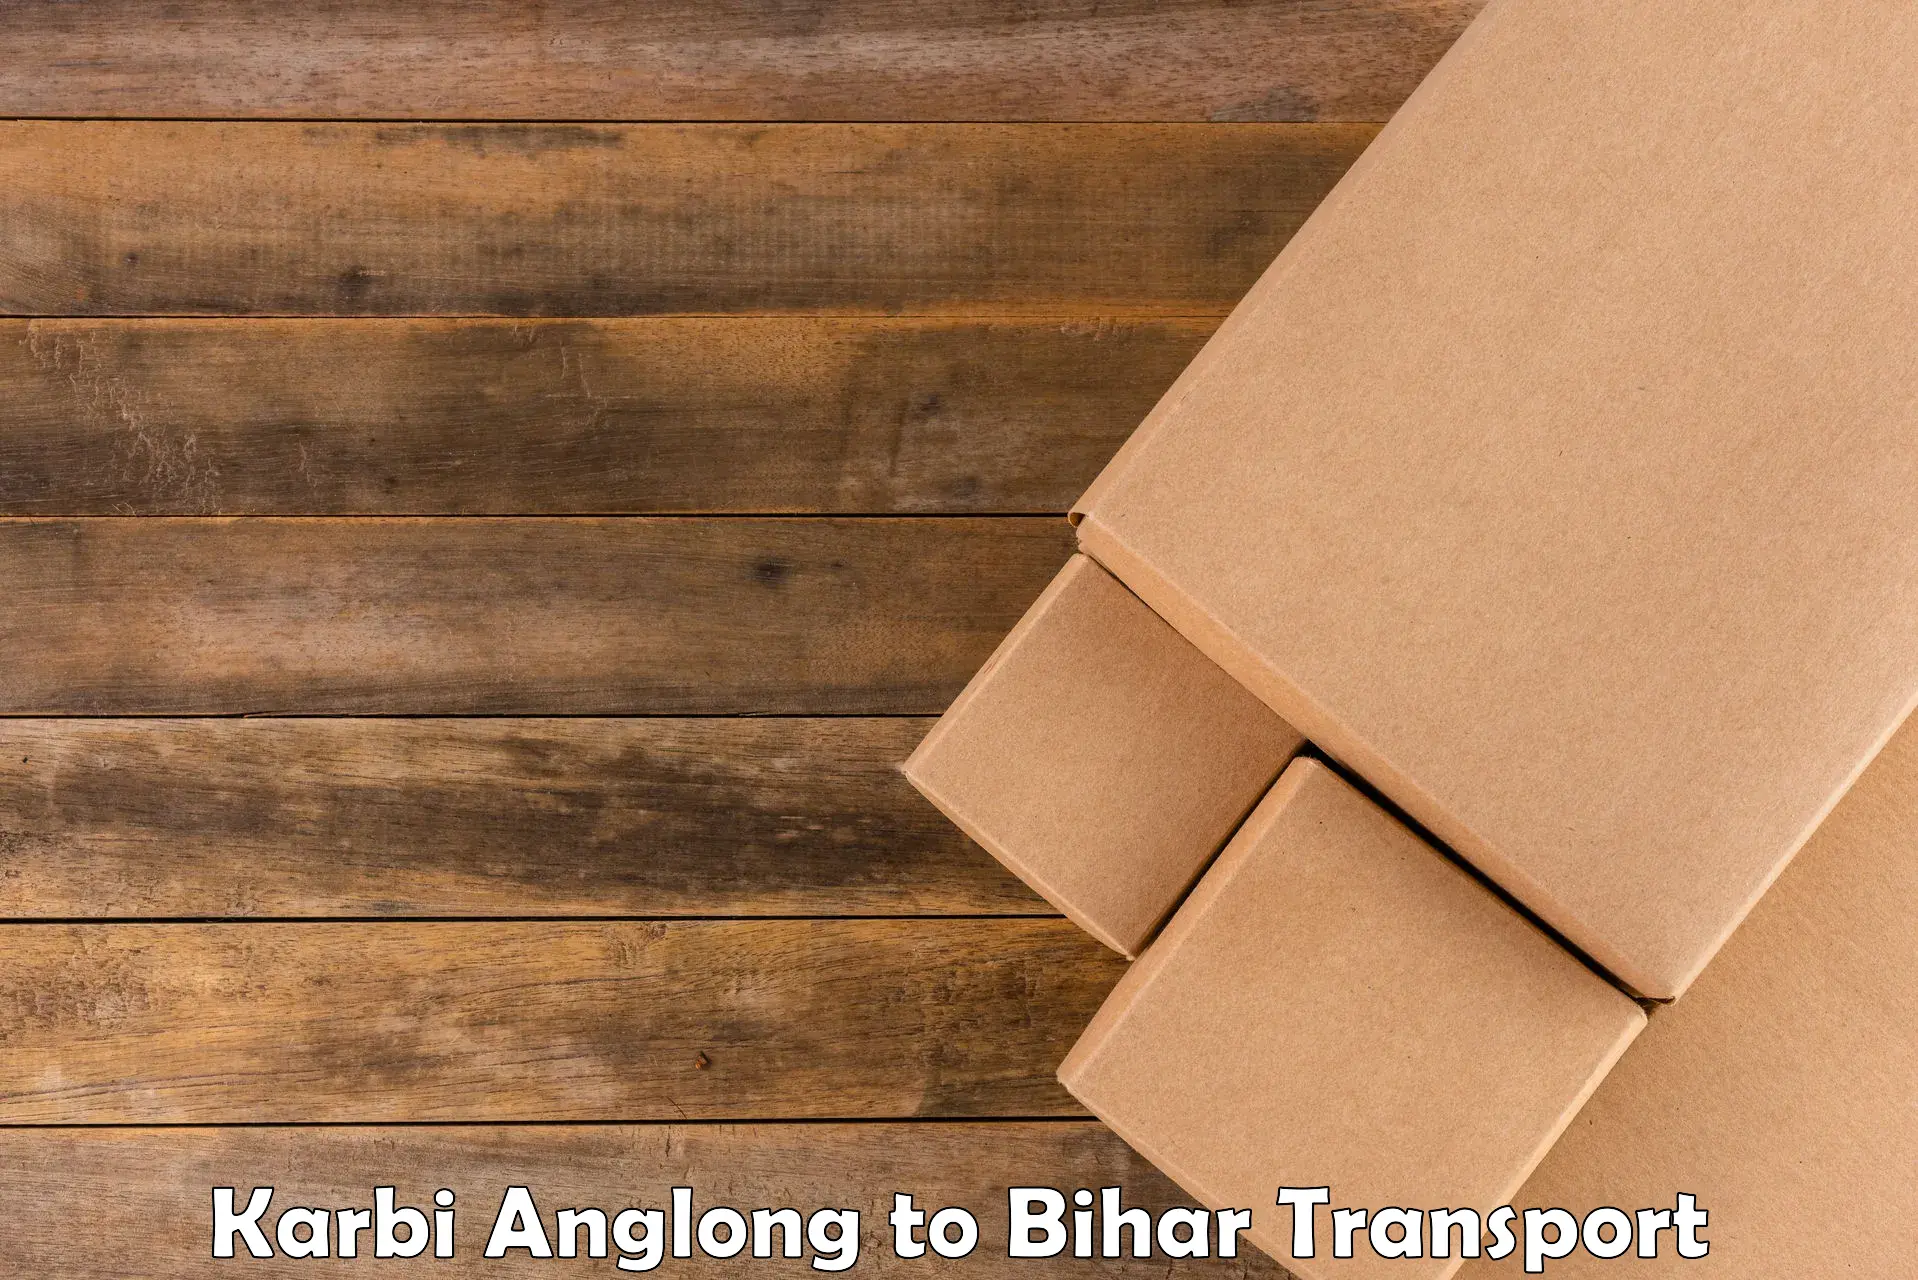 Daily transport service Karbi Anglong to Lakhisarai